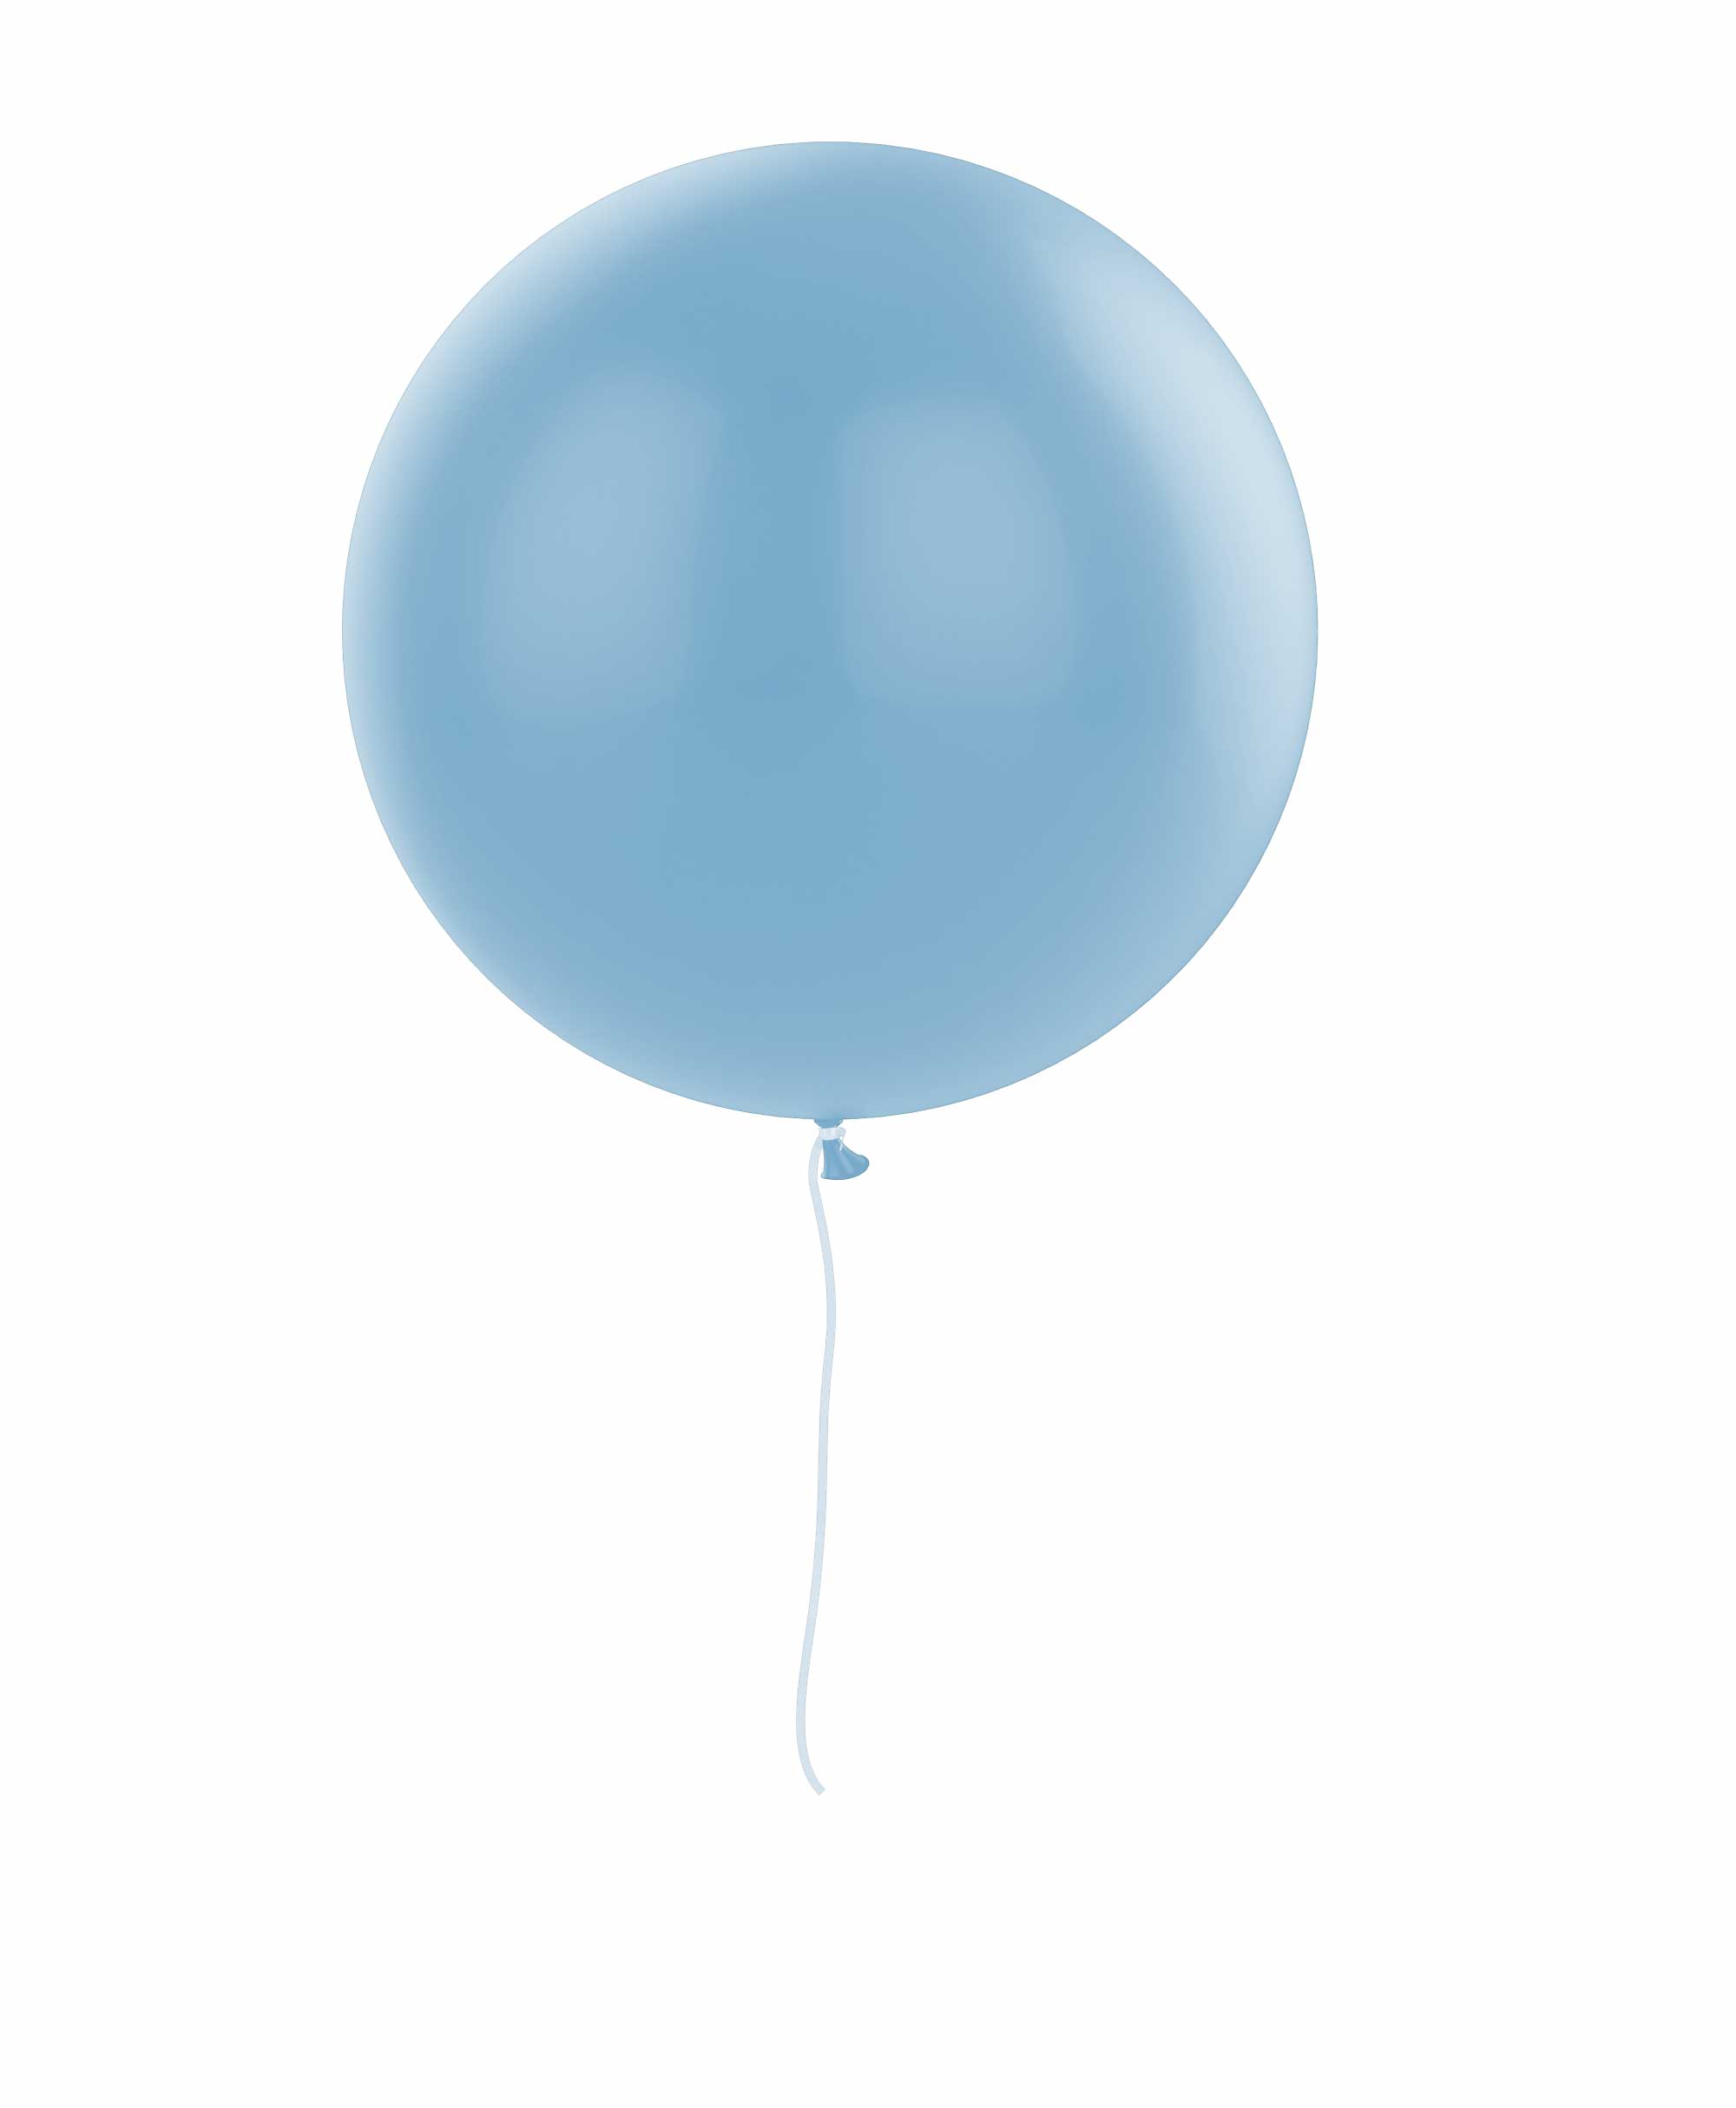 Light blue balloon 36" - Elephant Theme